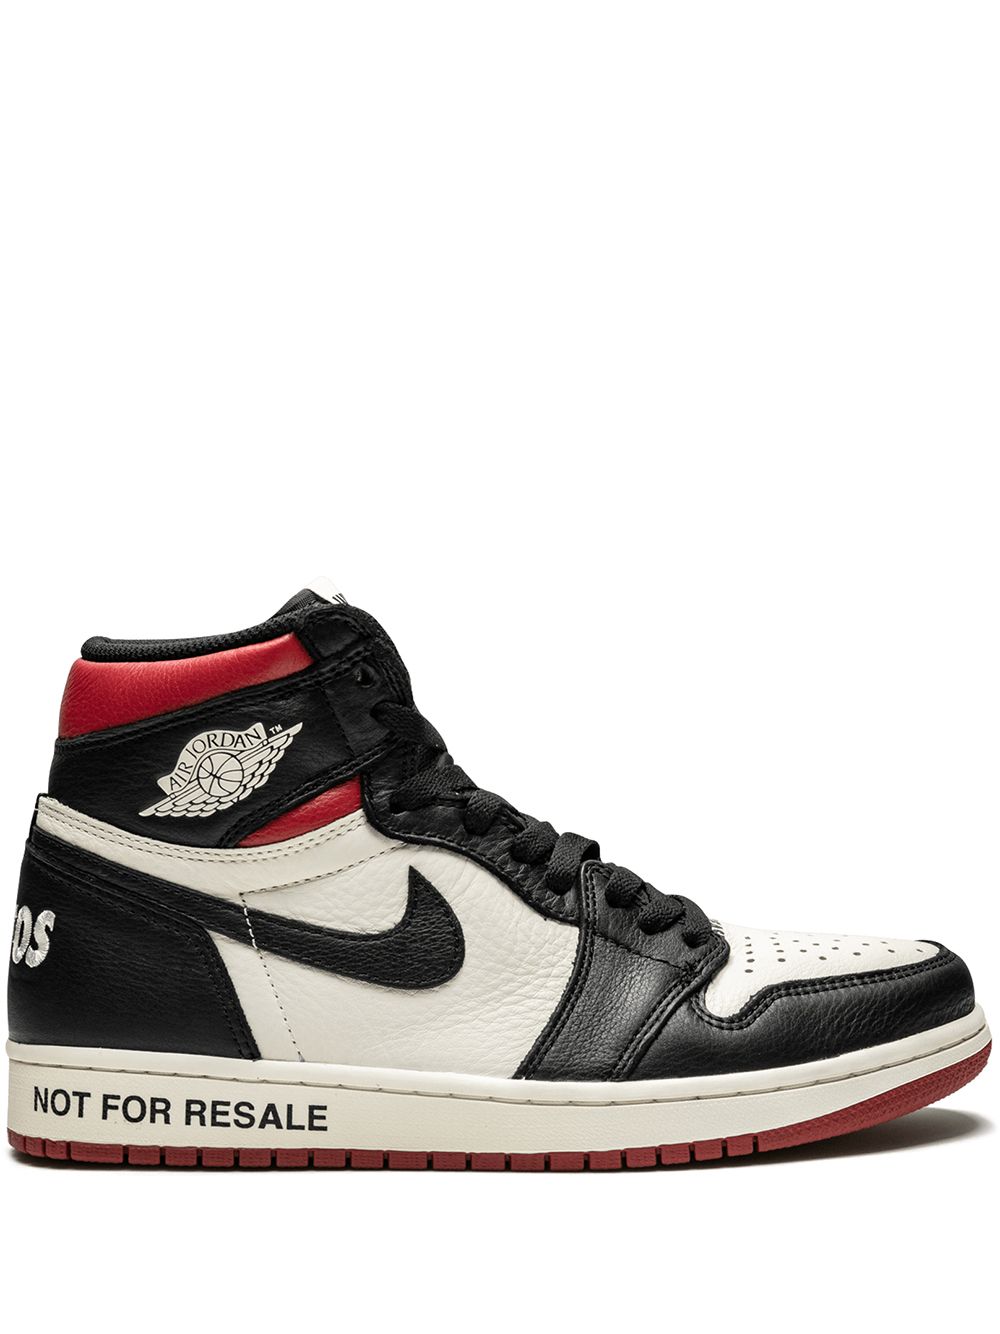 Jordan Air Jordan 1 Retro High OG NRG "Not For Resale" sneakers - Black